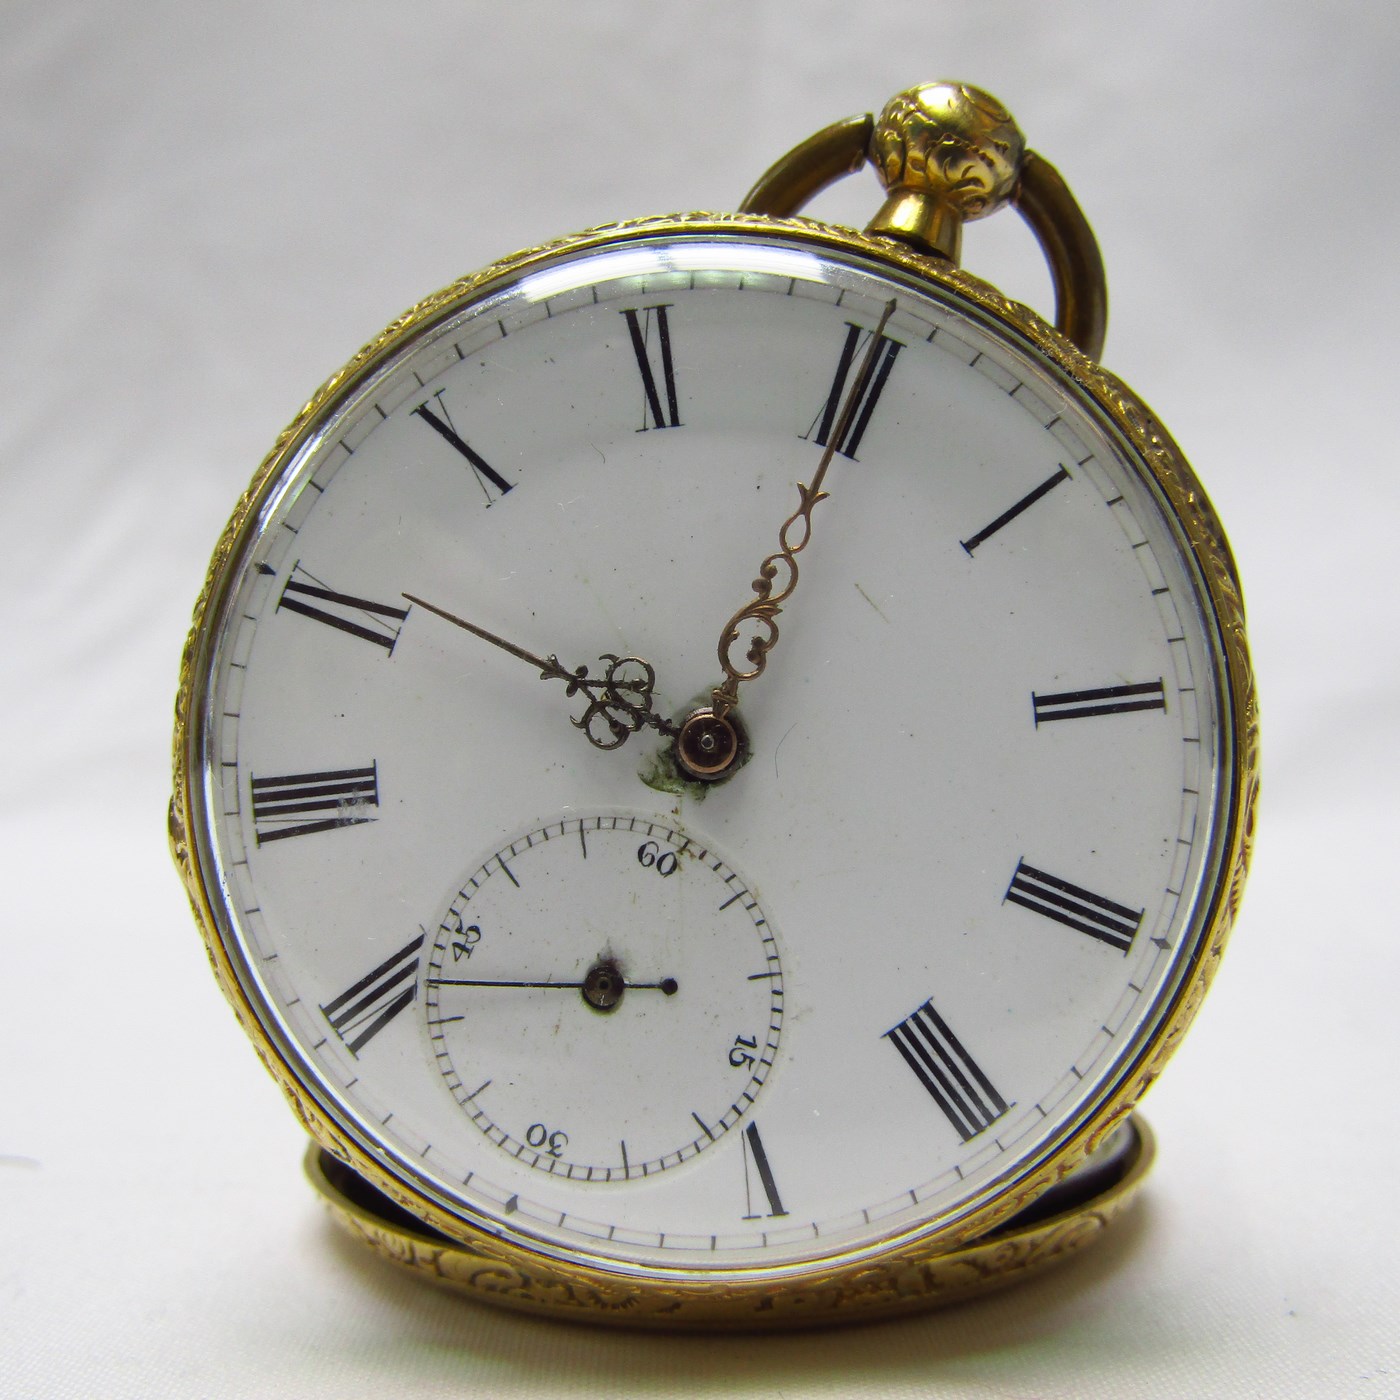 Reloj de Bolsillo, Lepine. Suiza, ca. 1900